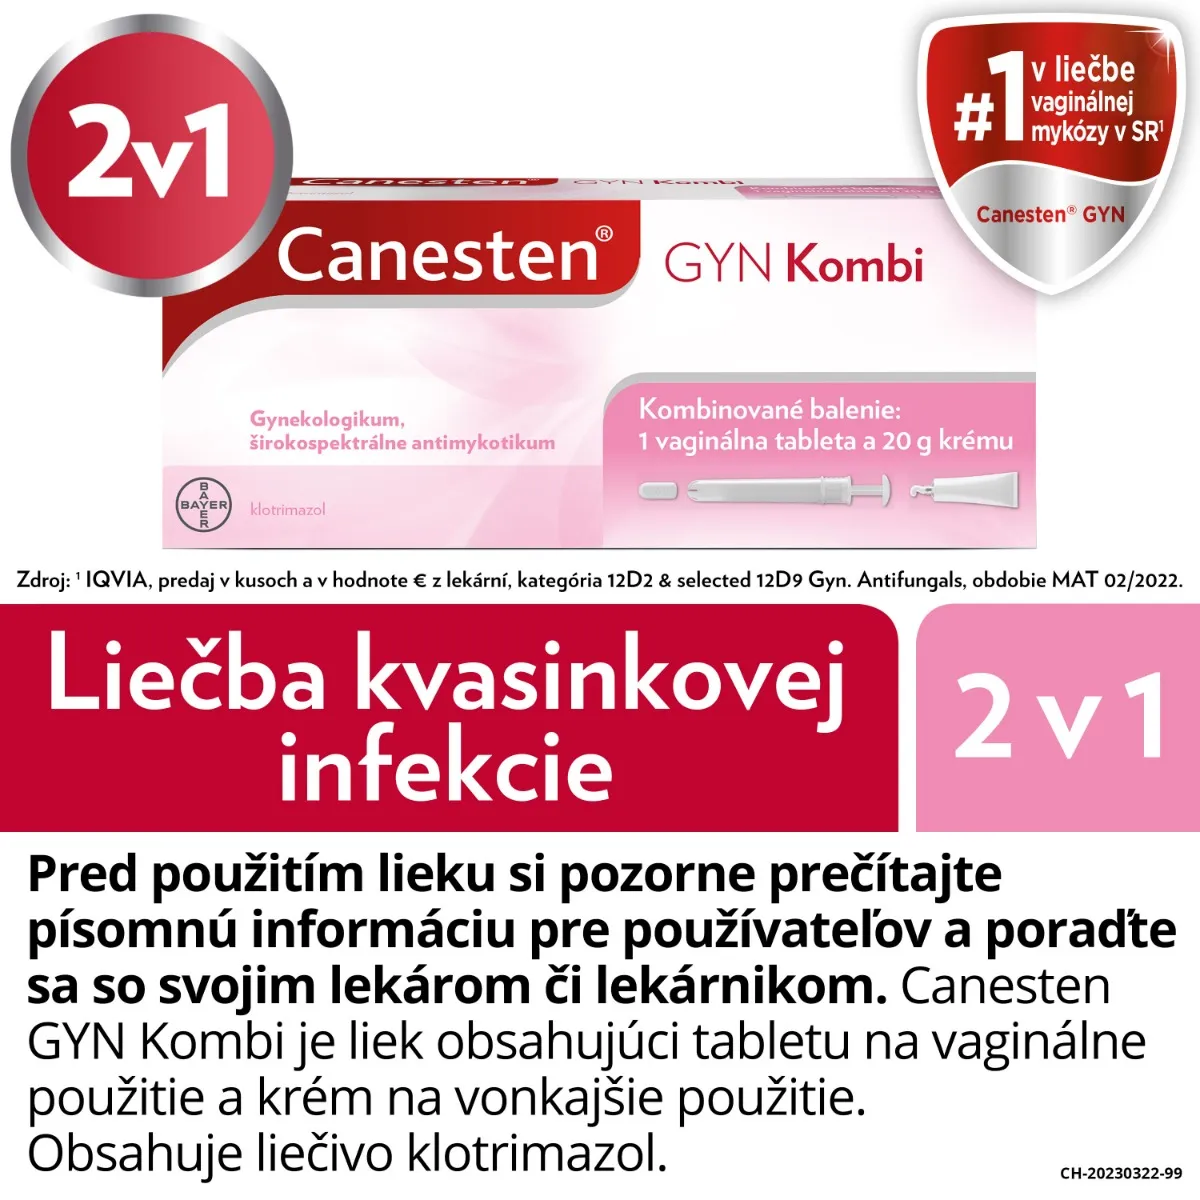 Canesten GYN Kombi 1×500 mg, komplexná liečba kvasinkovej infekcie